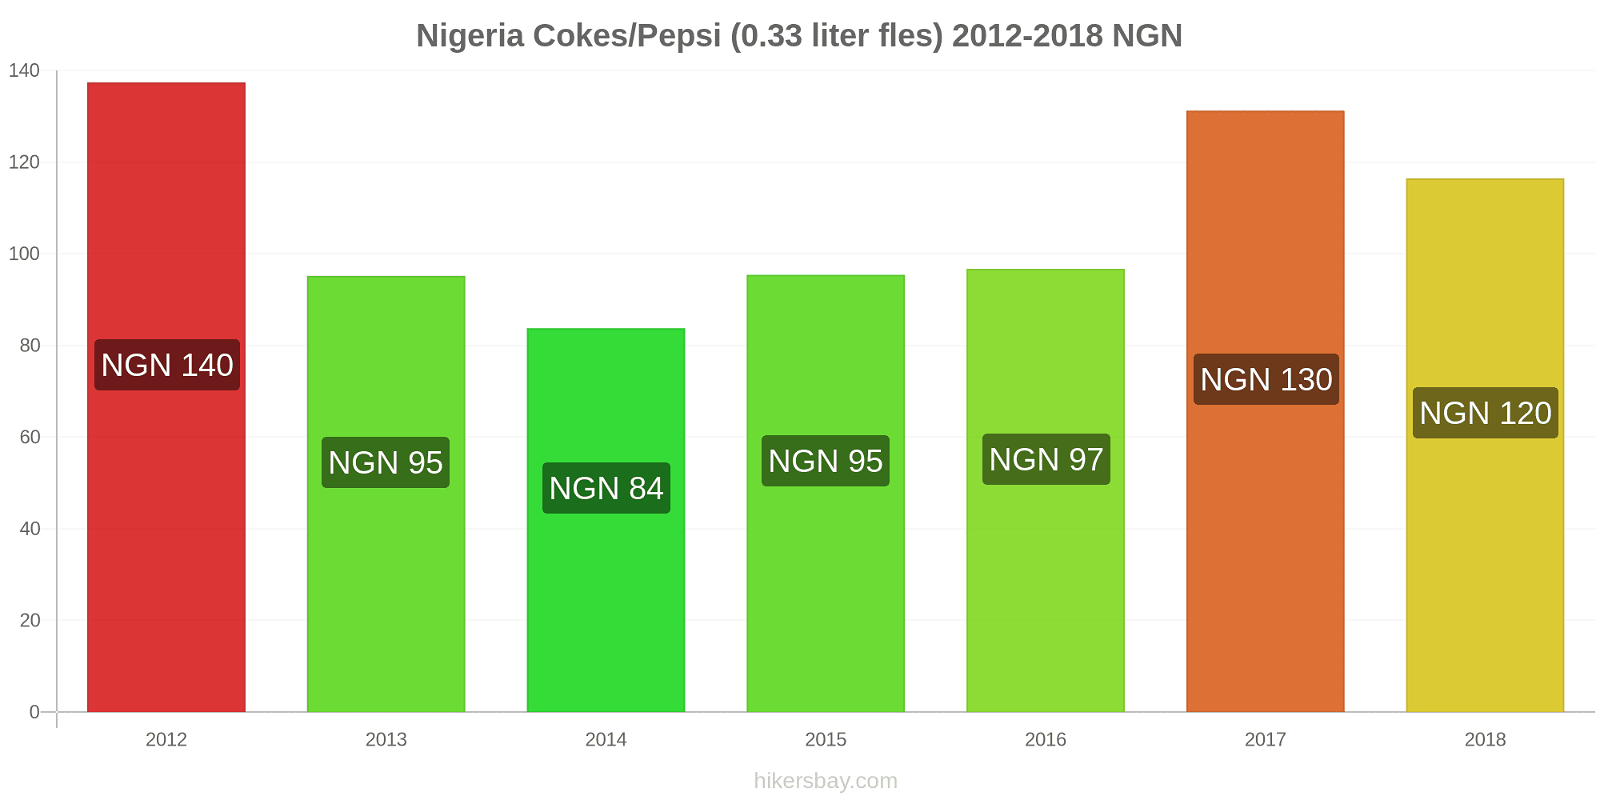 Nigeria prijswijzigingen Coca-Cola/Pepsi (0.33 liter fles) hikersbay.com